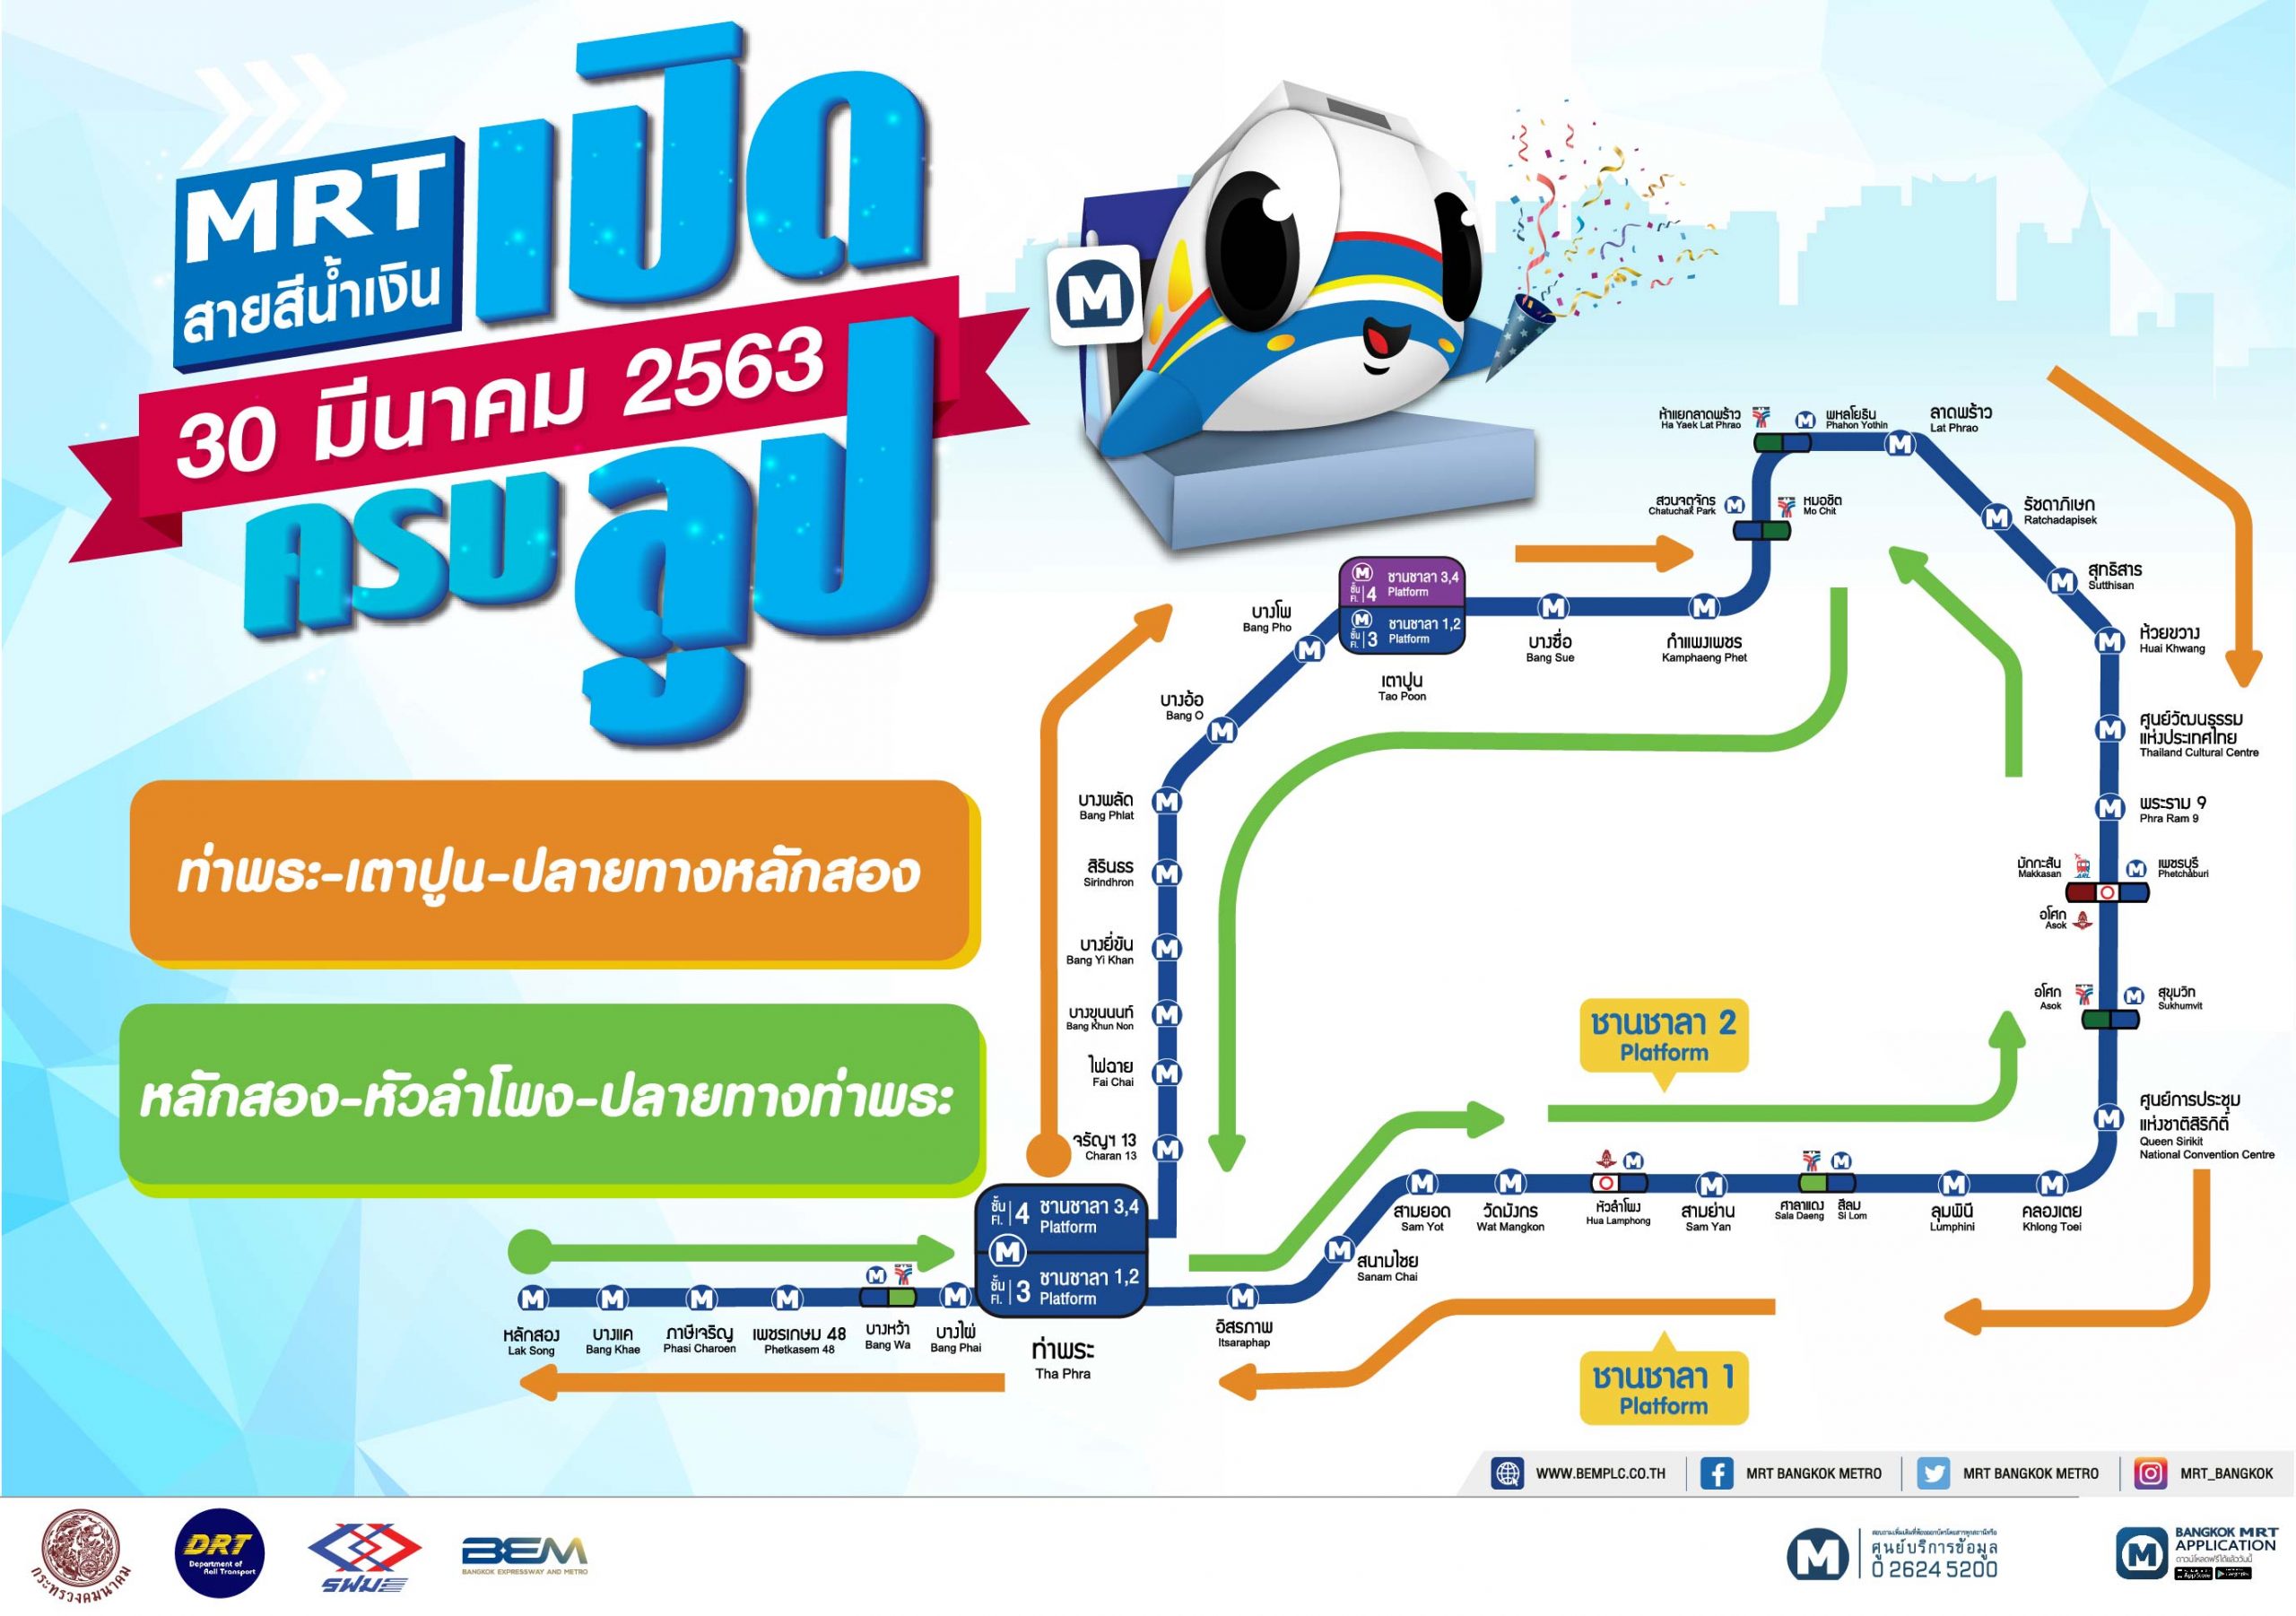 รฟม. และ BEM แนะนำวิธีการเดินทางด้วยรถไฟฟ้า MRT สายสีน้ำเงิน และสายสีม่วง แบบครบลูป ตั้งแต่วันที่ 30 มีนาคม 2563 นี้